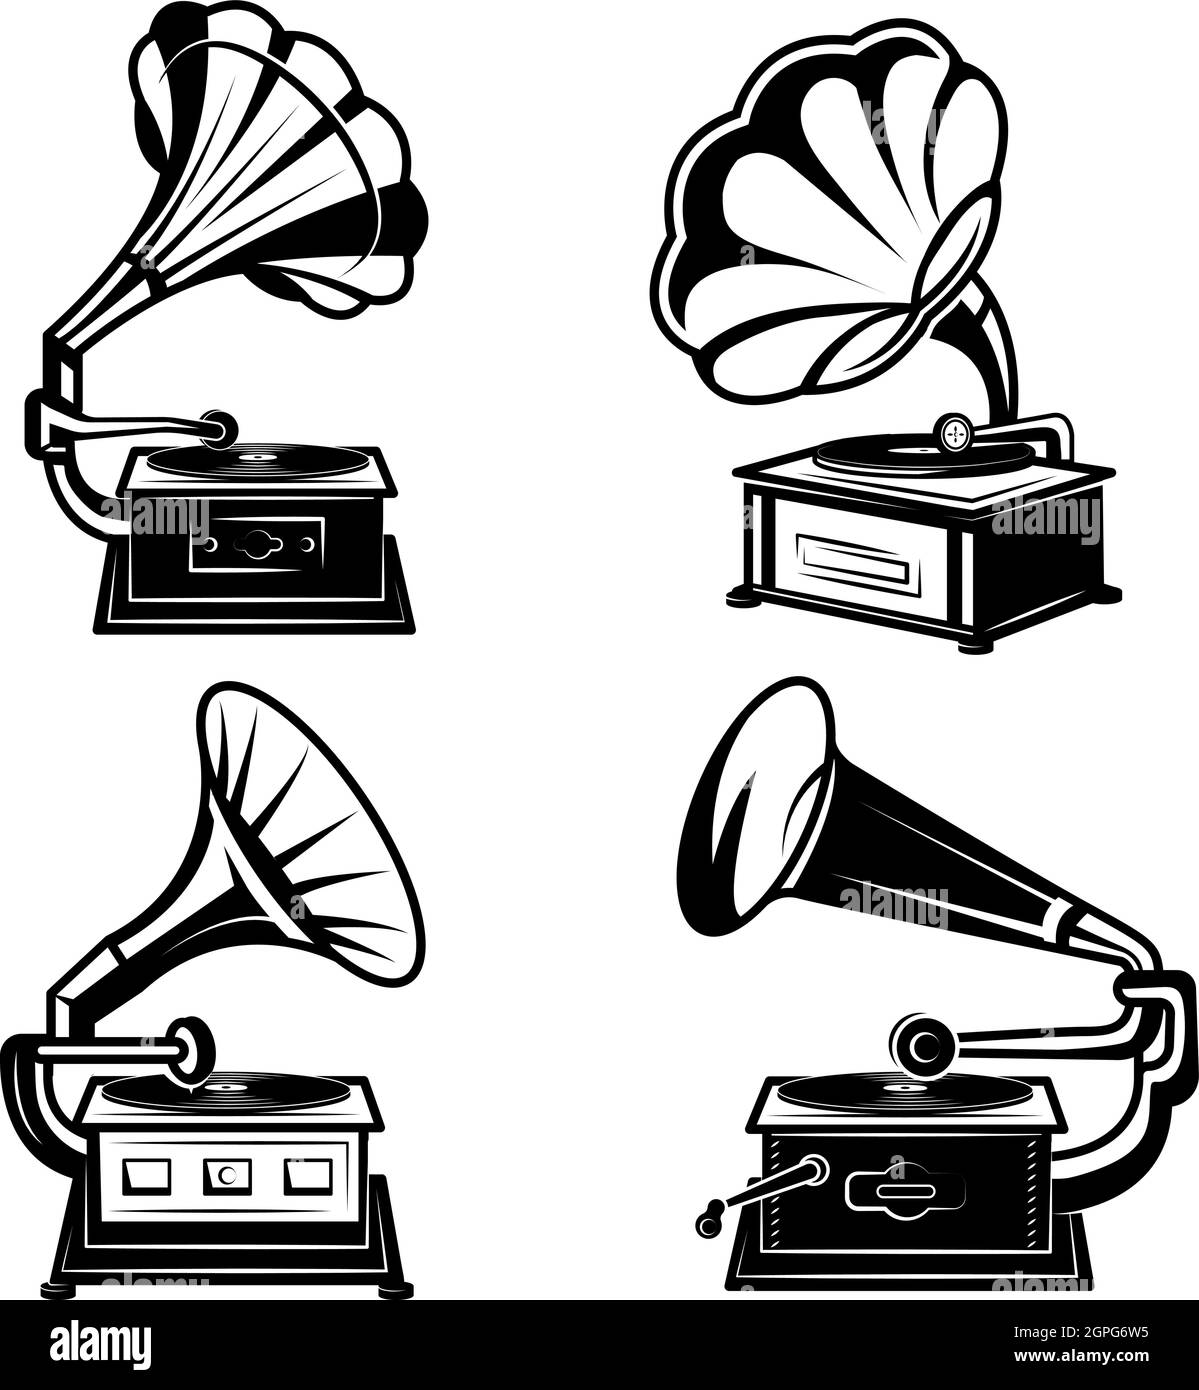 Grammofoni. Lettori di musica vintage con dischi in vinile retro fonografo box song equipment vettoriale monocromatico collezione Illustrazione Vettoriale